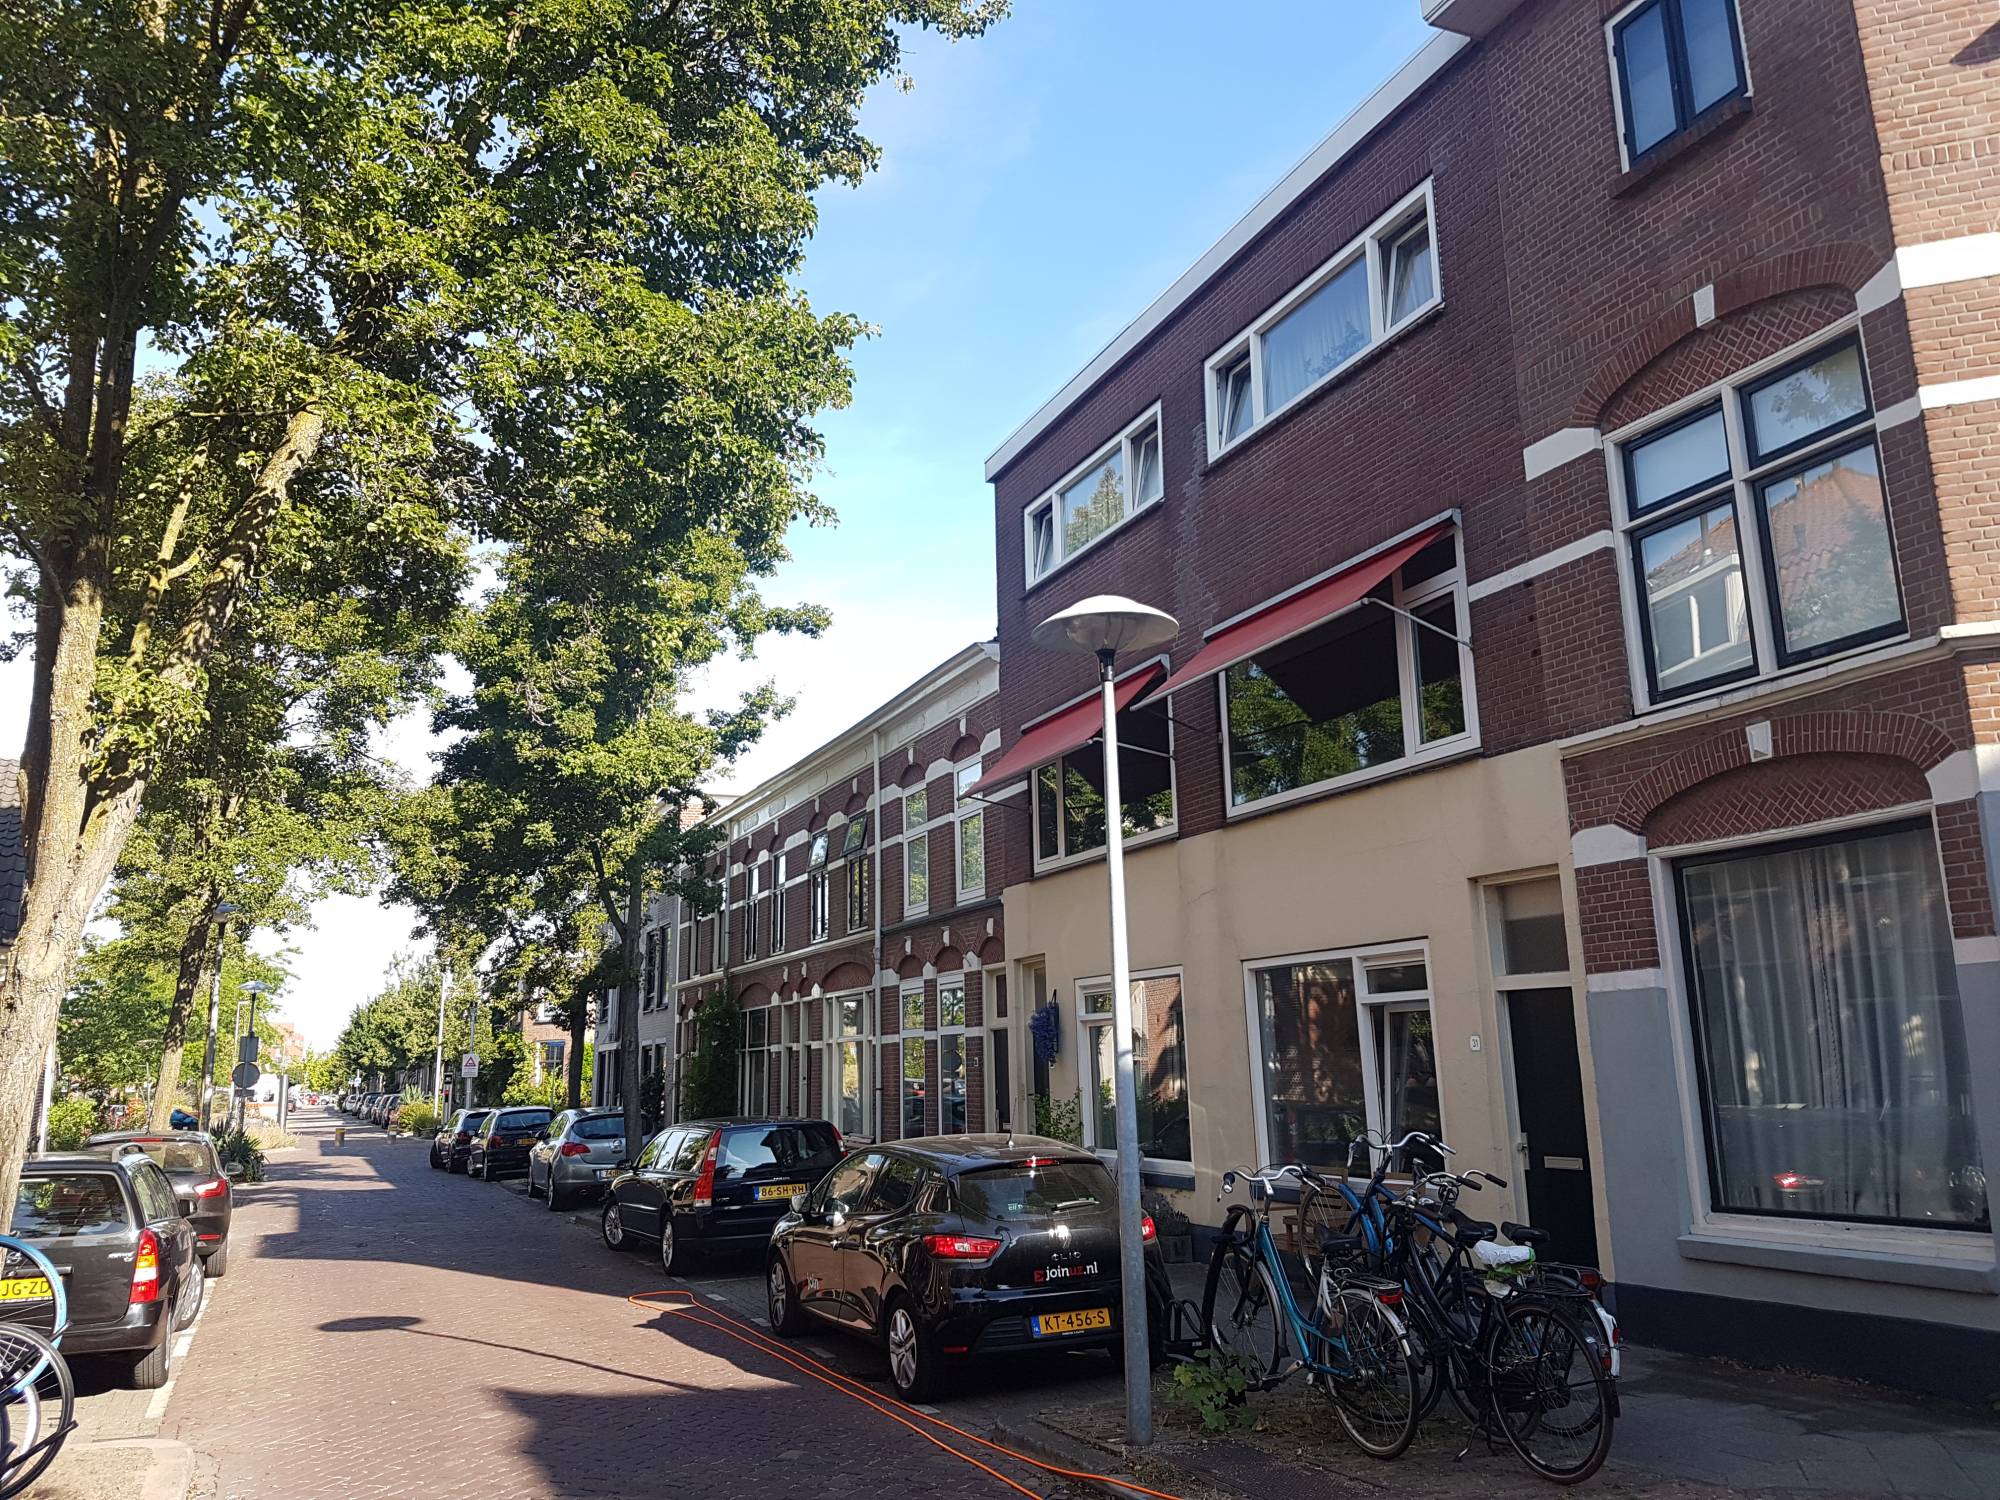 Bekijk foto 1/13 van apartment in Utrecht